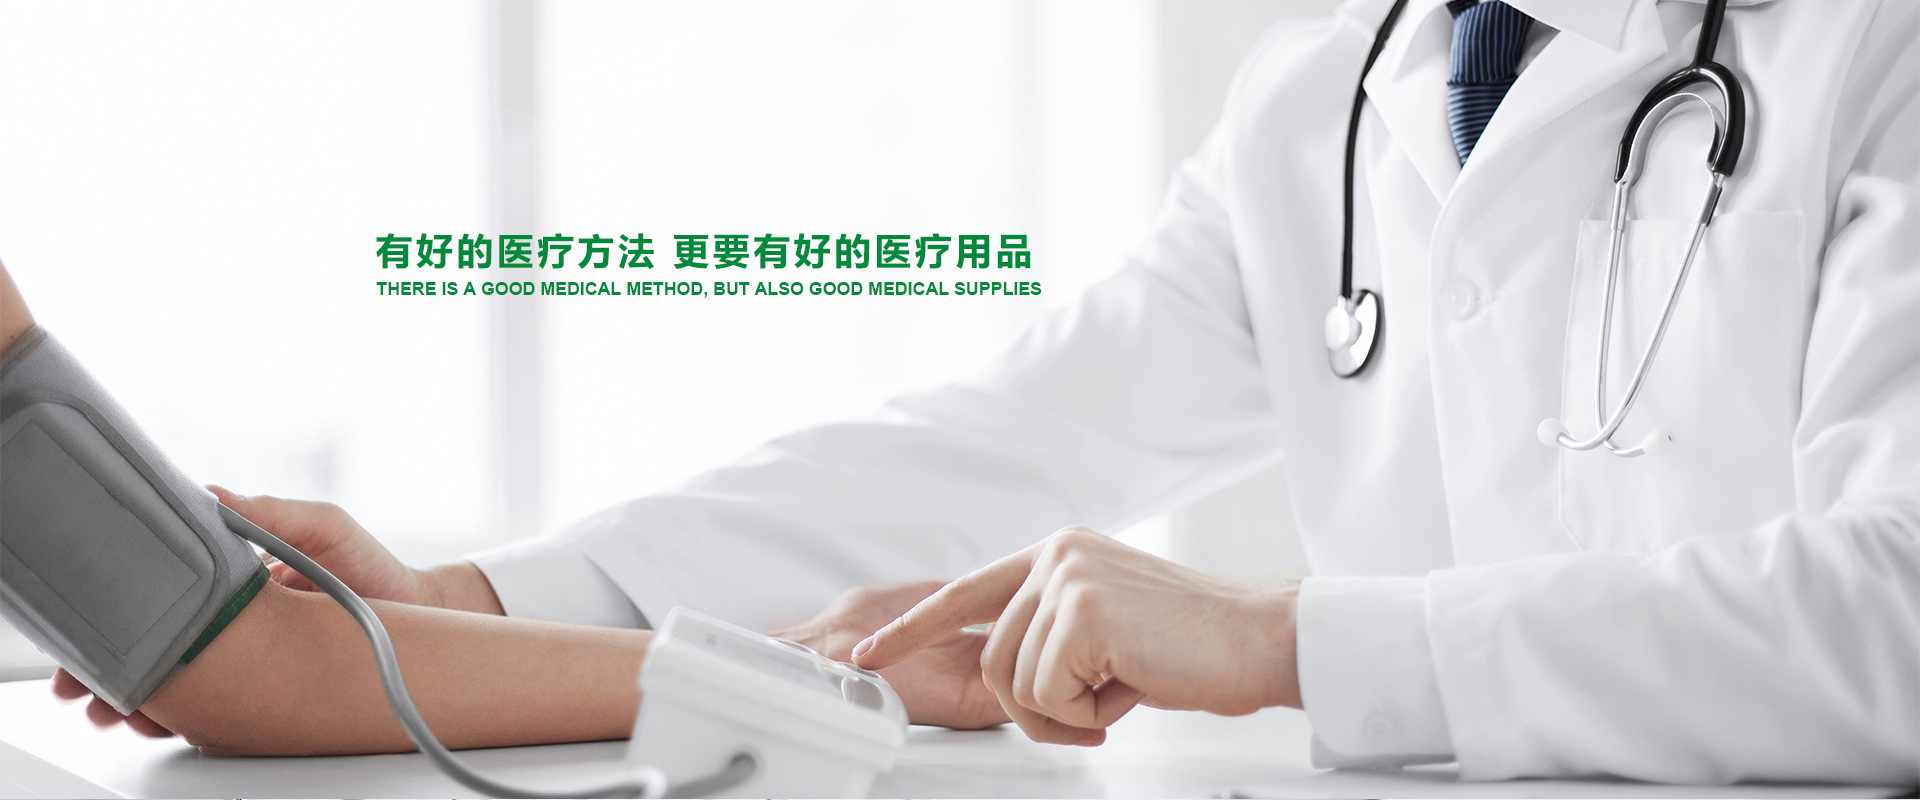 江西晶康宇医疗科技有限公司是一家从事医用雾化吸入器，呼吸机细菌过滤器生产和销售为一体的专业医疗器械生产企业